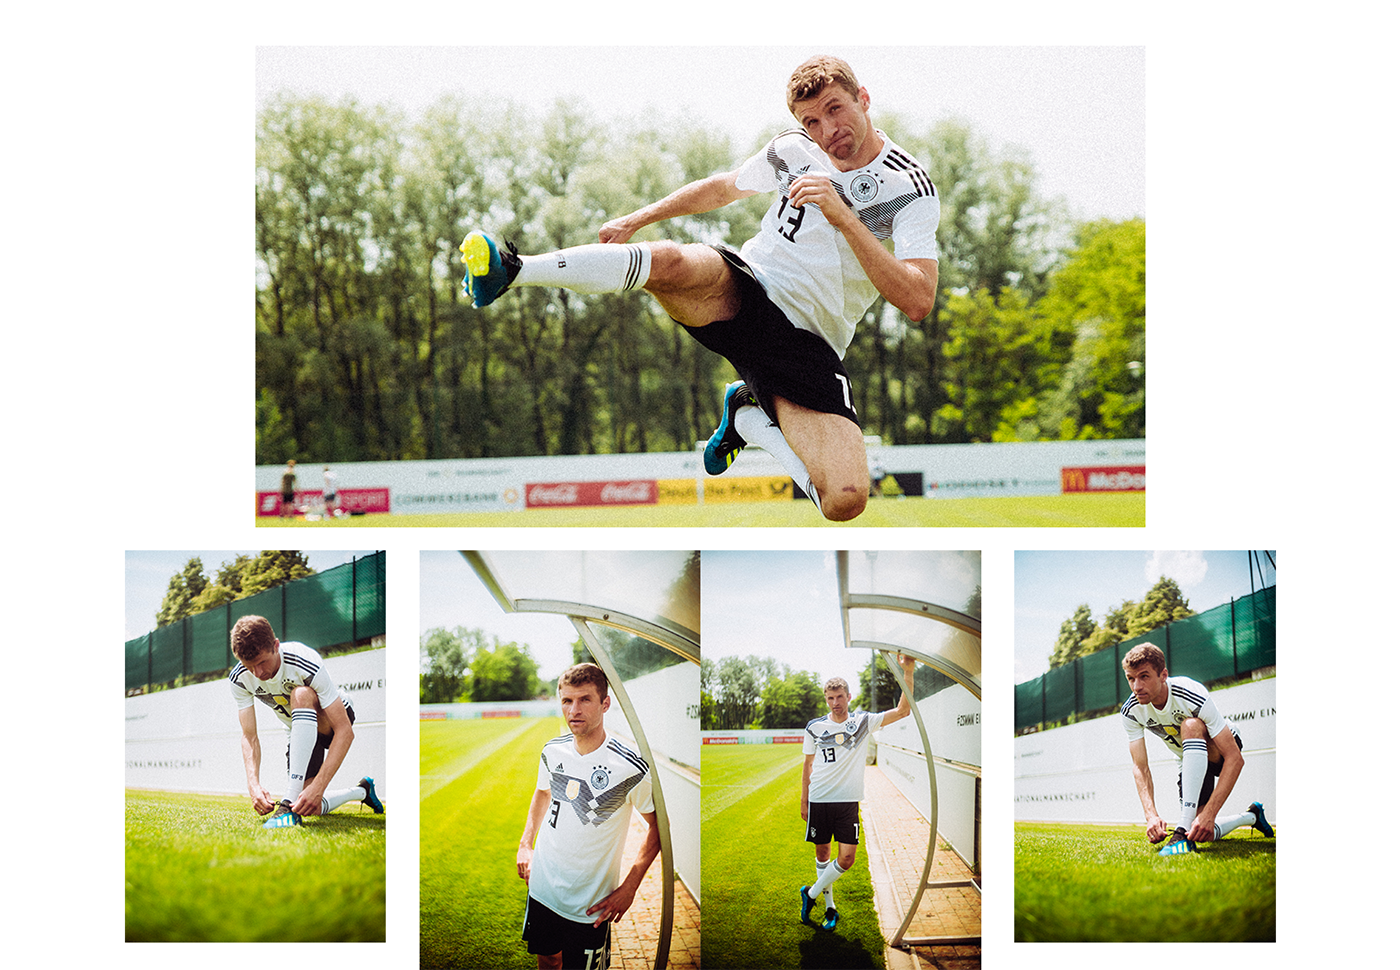 DFB adidas andre josselin Leica voigtlander 35mm football soccer Manuel Neuer Thomas Muller